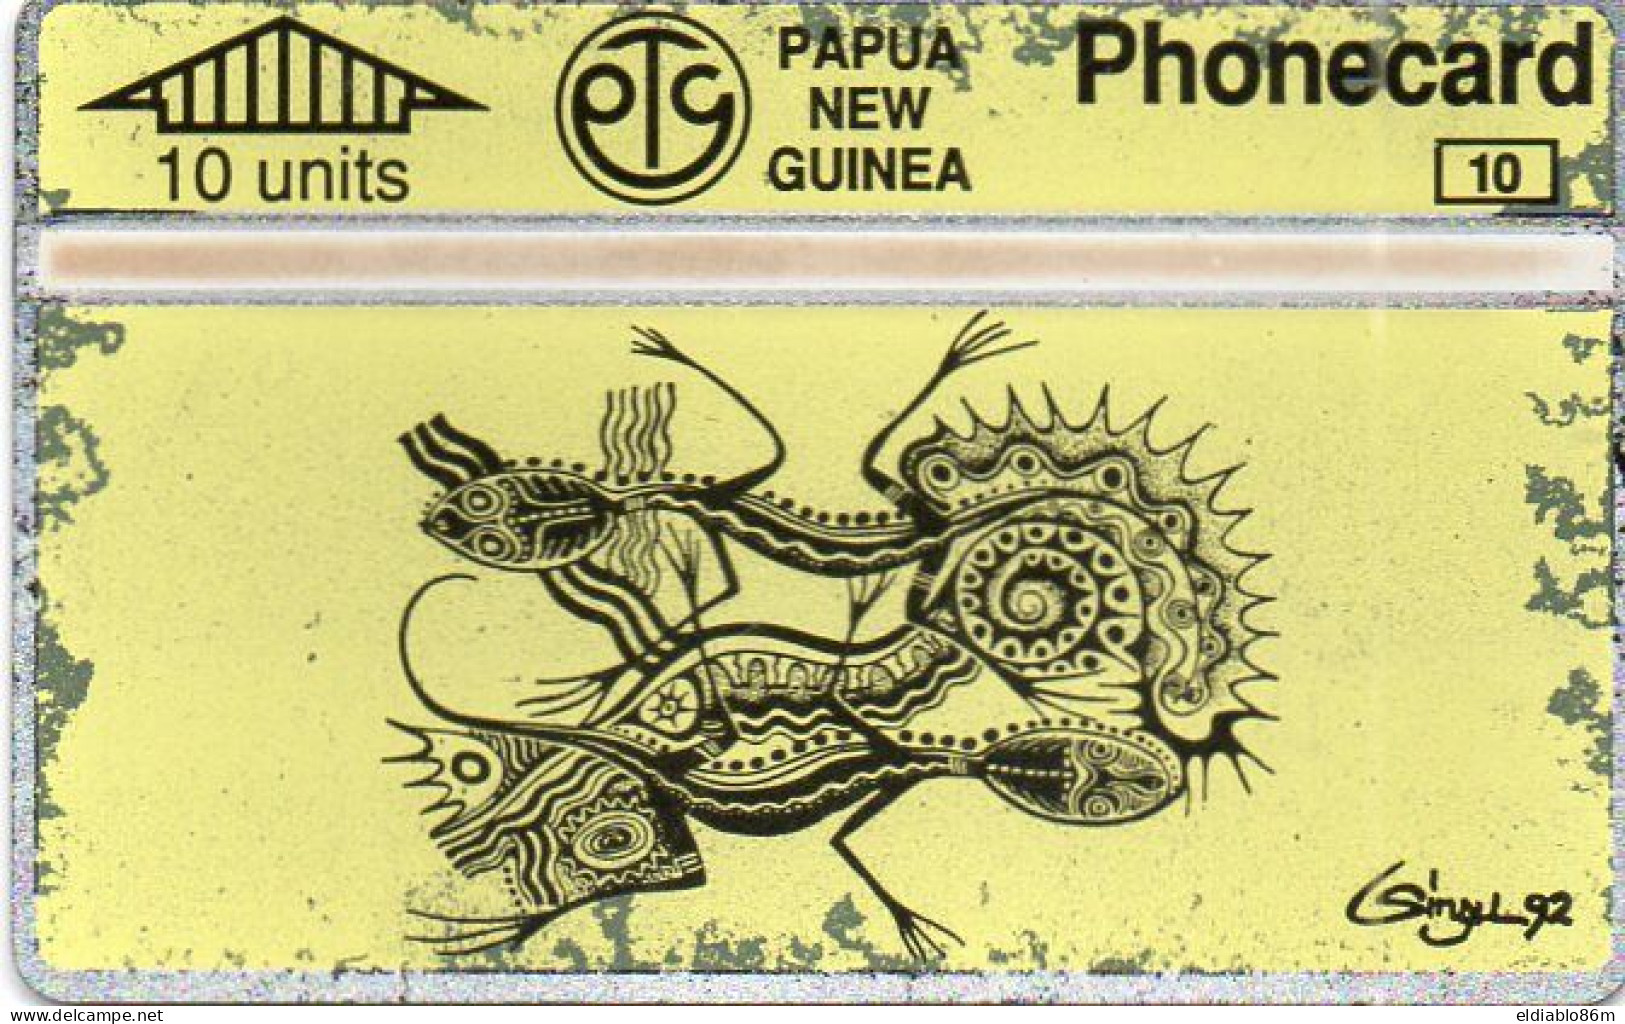 PAPUA NEW GUINEA - L&G - PNG-23 - ART YELLOW CARD - 401A - Papoea-Nieuw-Guinea